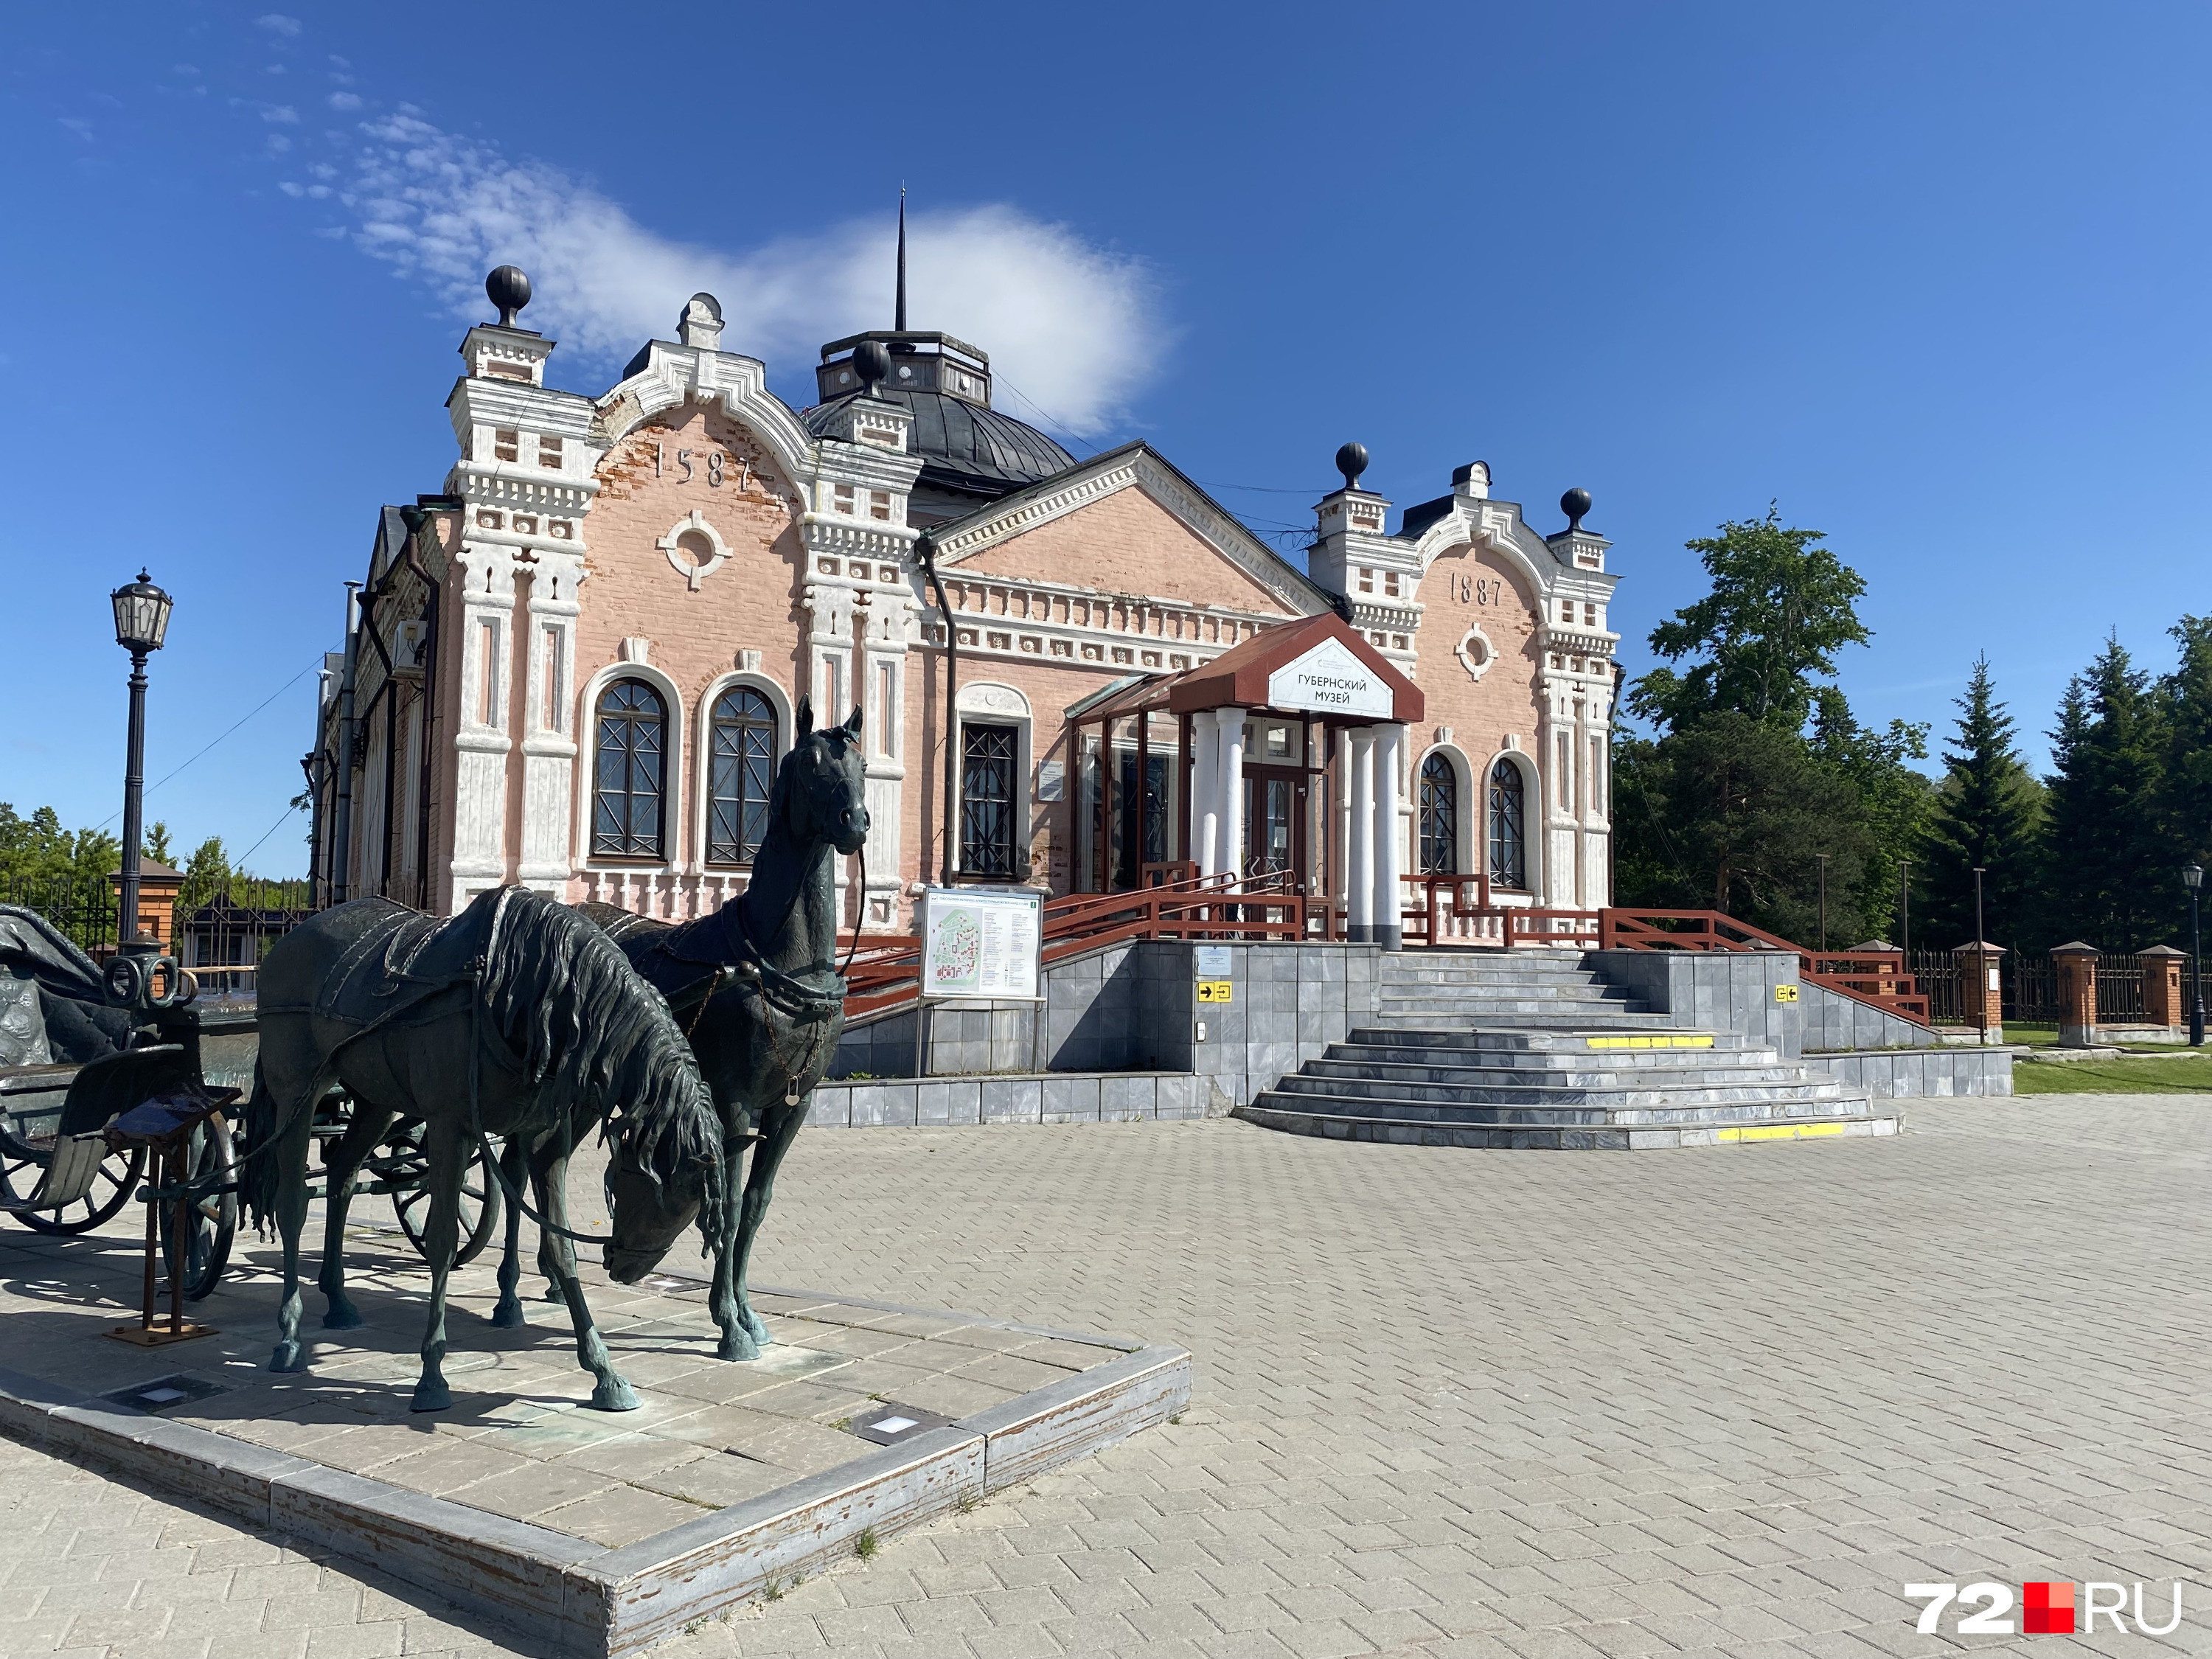 Это Тобольский государственный историко-архитектурный музей-заповедник. Появился он в 1870 году и является старейшим музеем Сибири